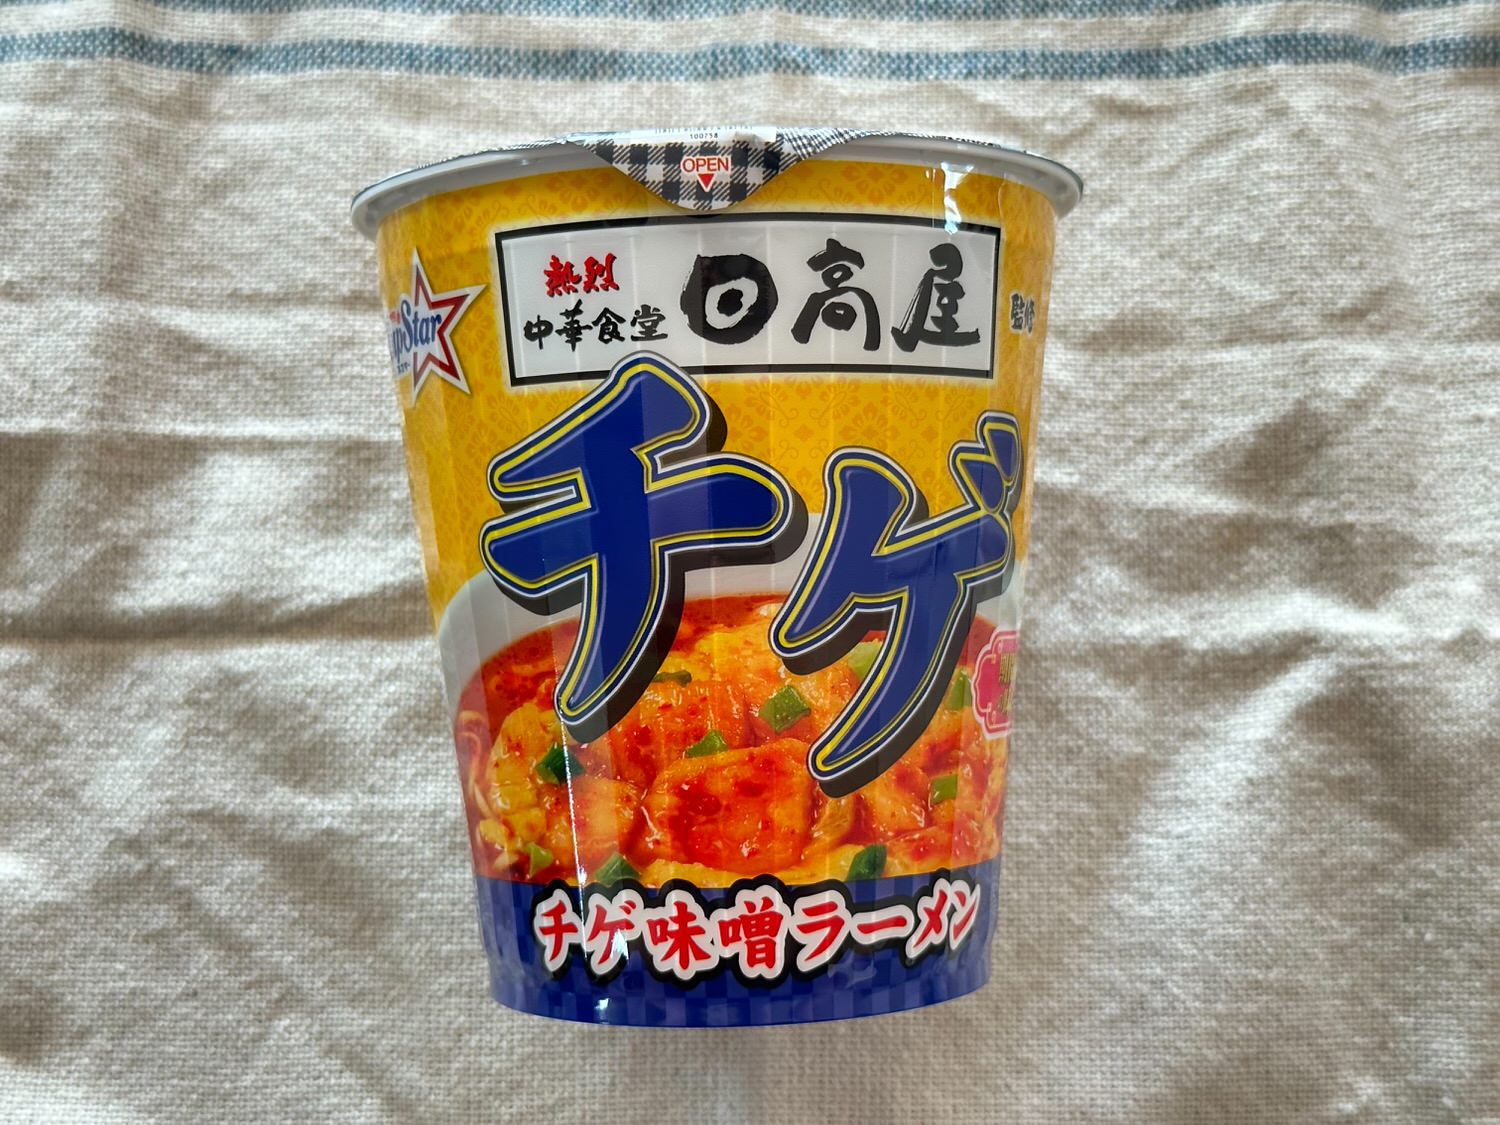 日高屋監修 チゲ味噌ラーメン カップ麺 001 26